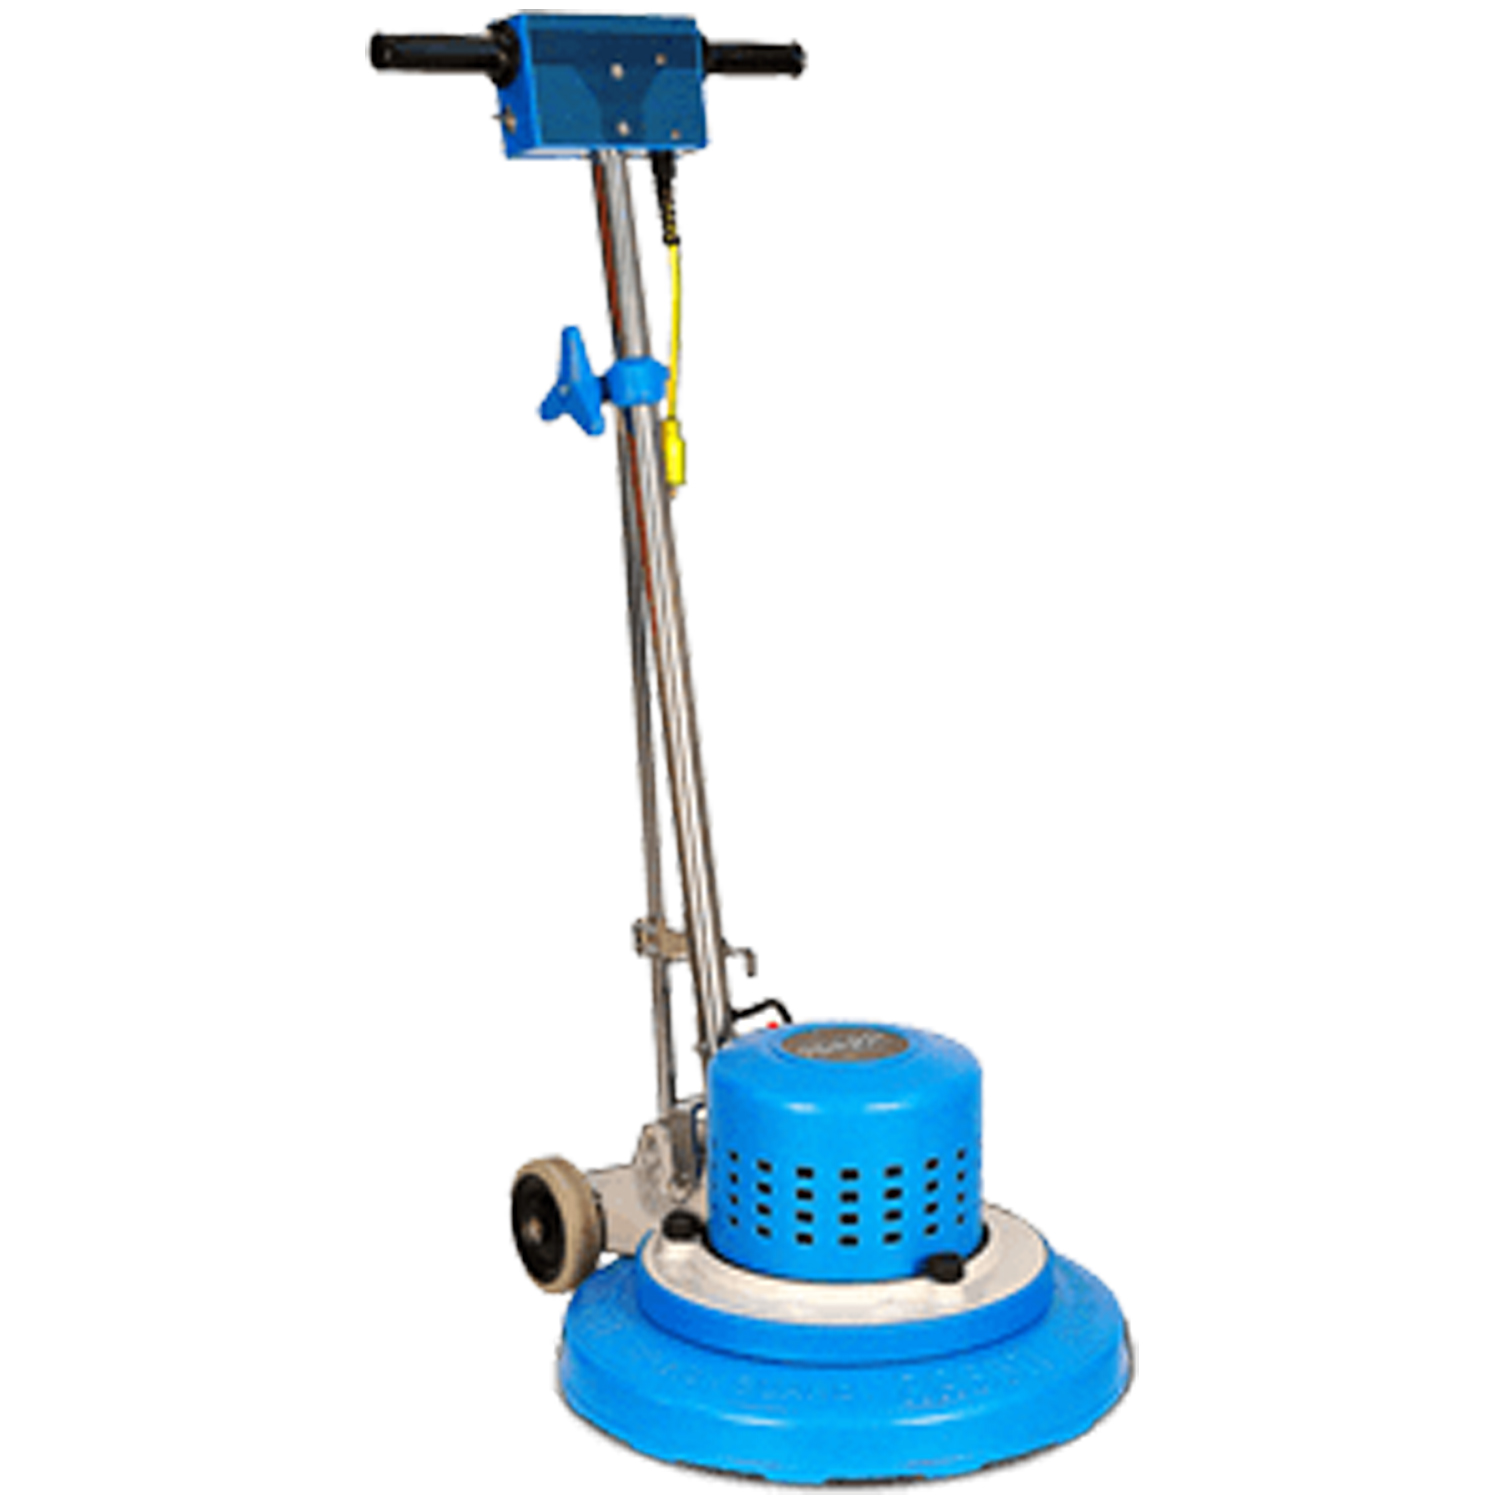 Centaur Floor Machines - Floor Cleaning Machine & Vacuum Cleaner